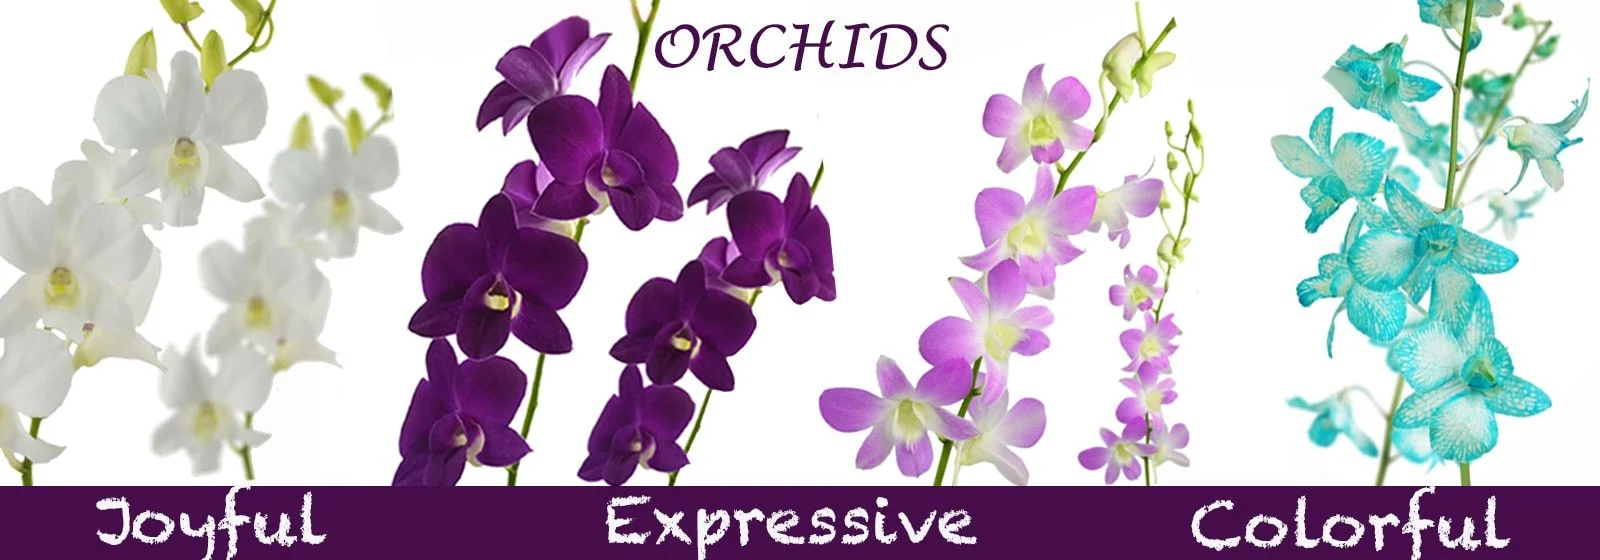 Premium Quality Orchids